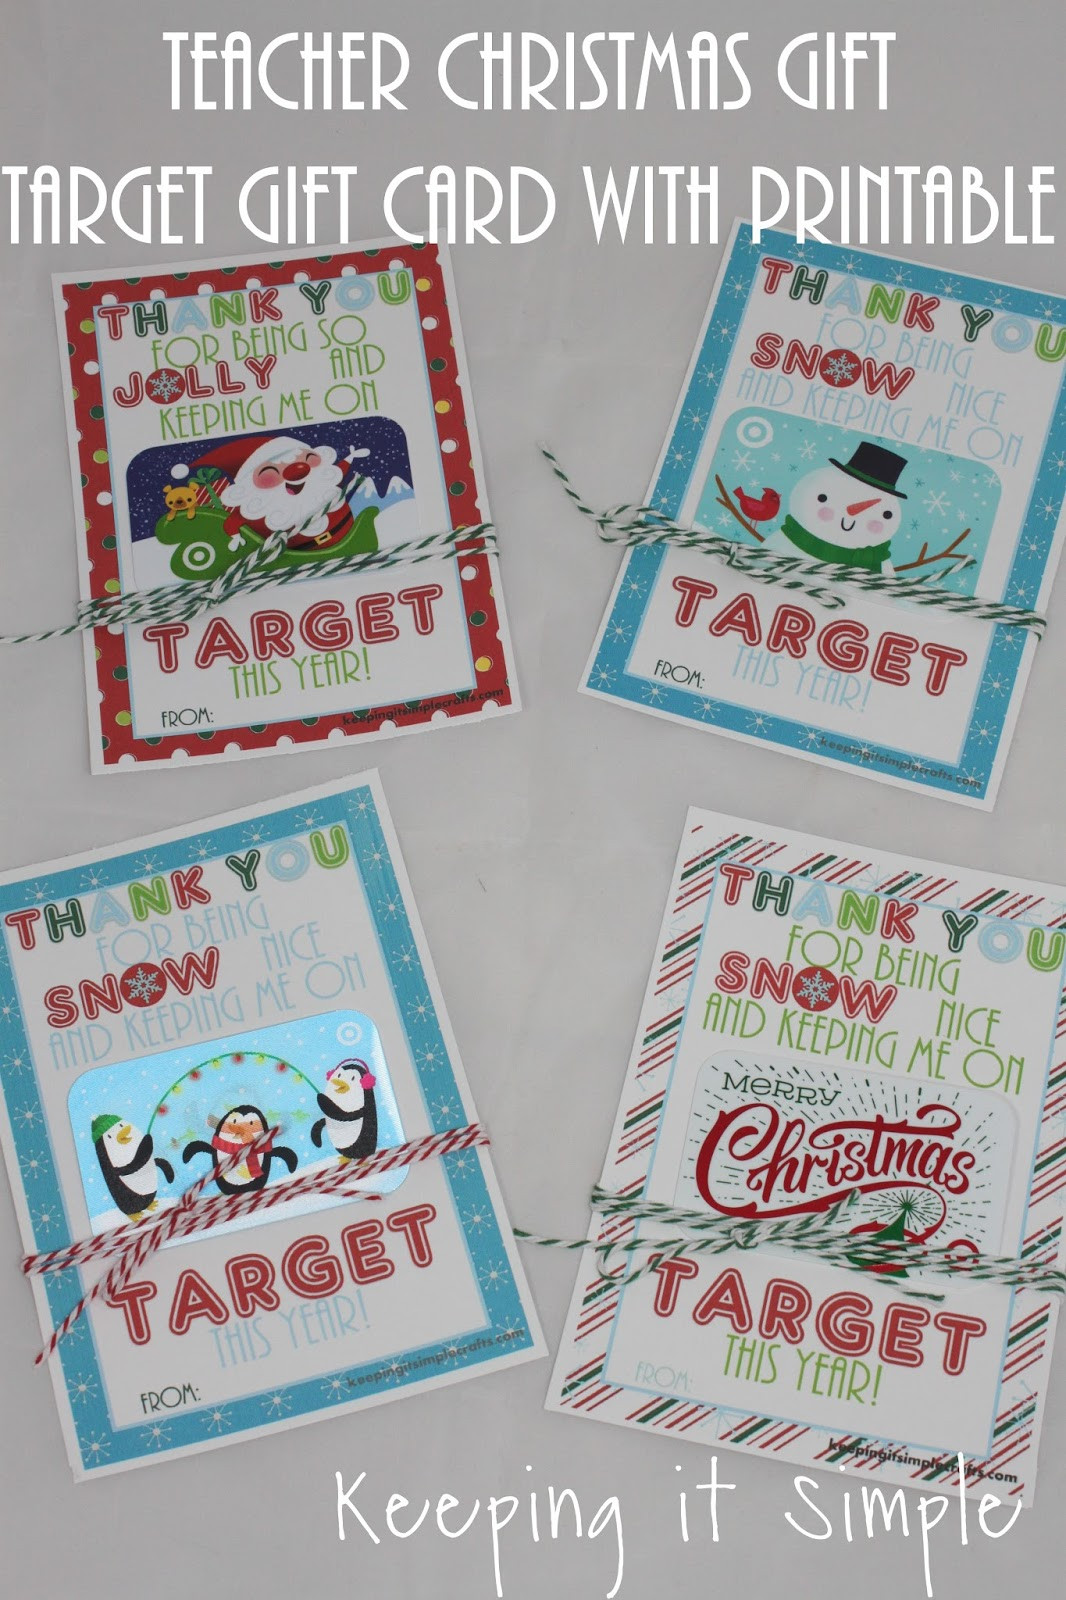 Holiday Gift Card Ideas
 Teacher Christmas Gift Idea Printable for Tar Gift